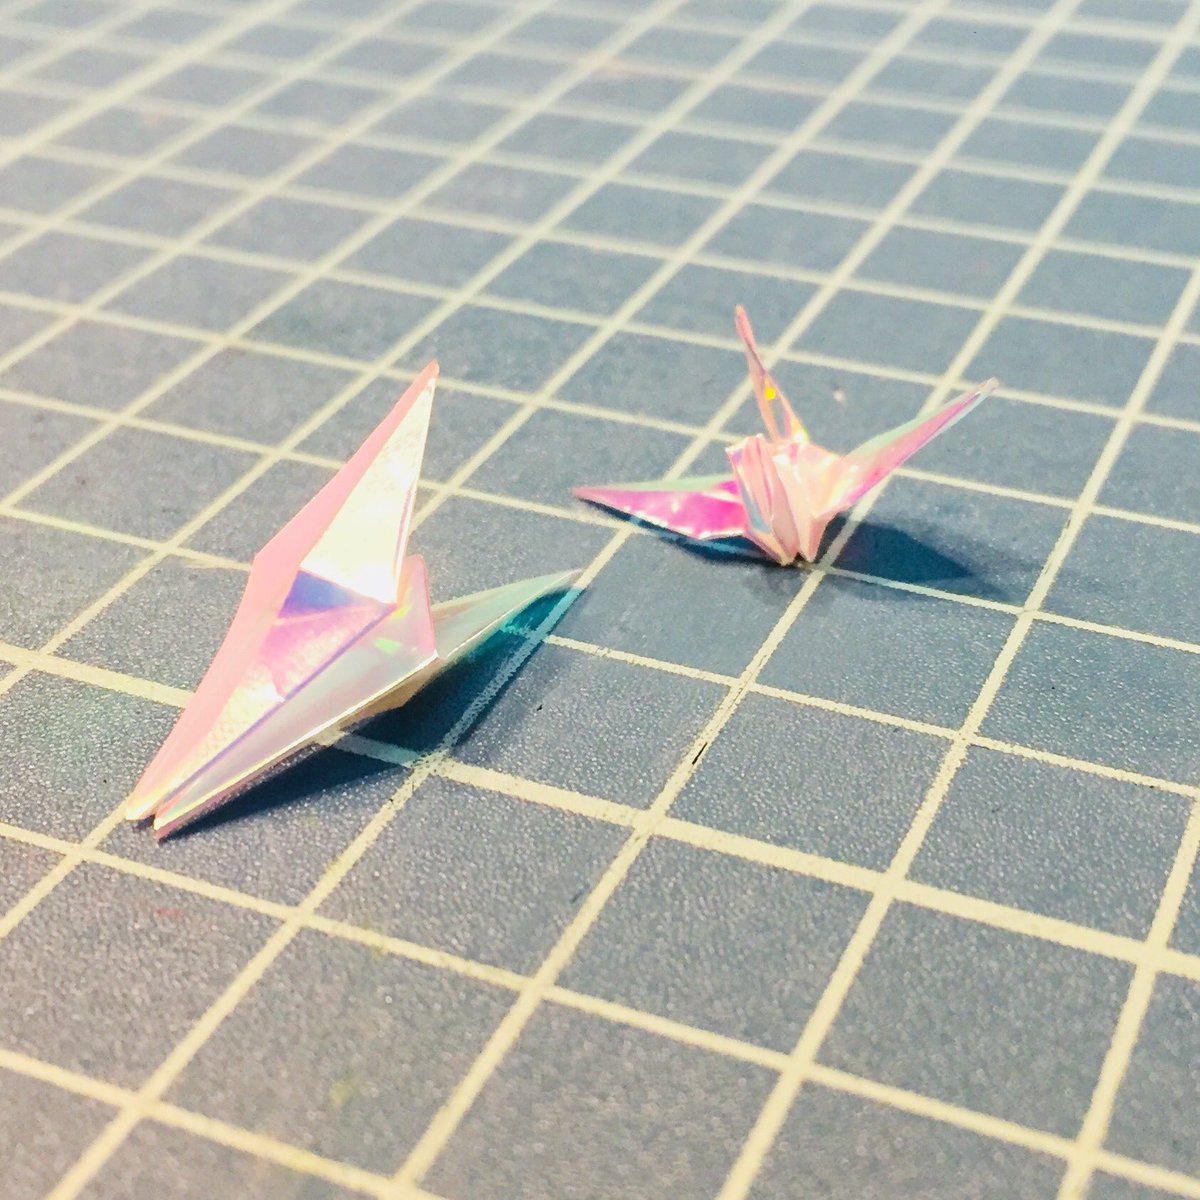 Folding tiny cranes for earrings #osaka #travelosaka #osakacastle #tanimachiya #谷町屋 #workshop